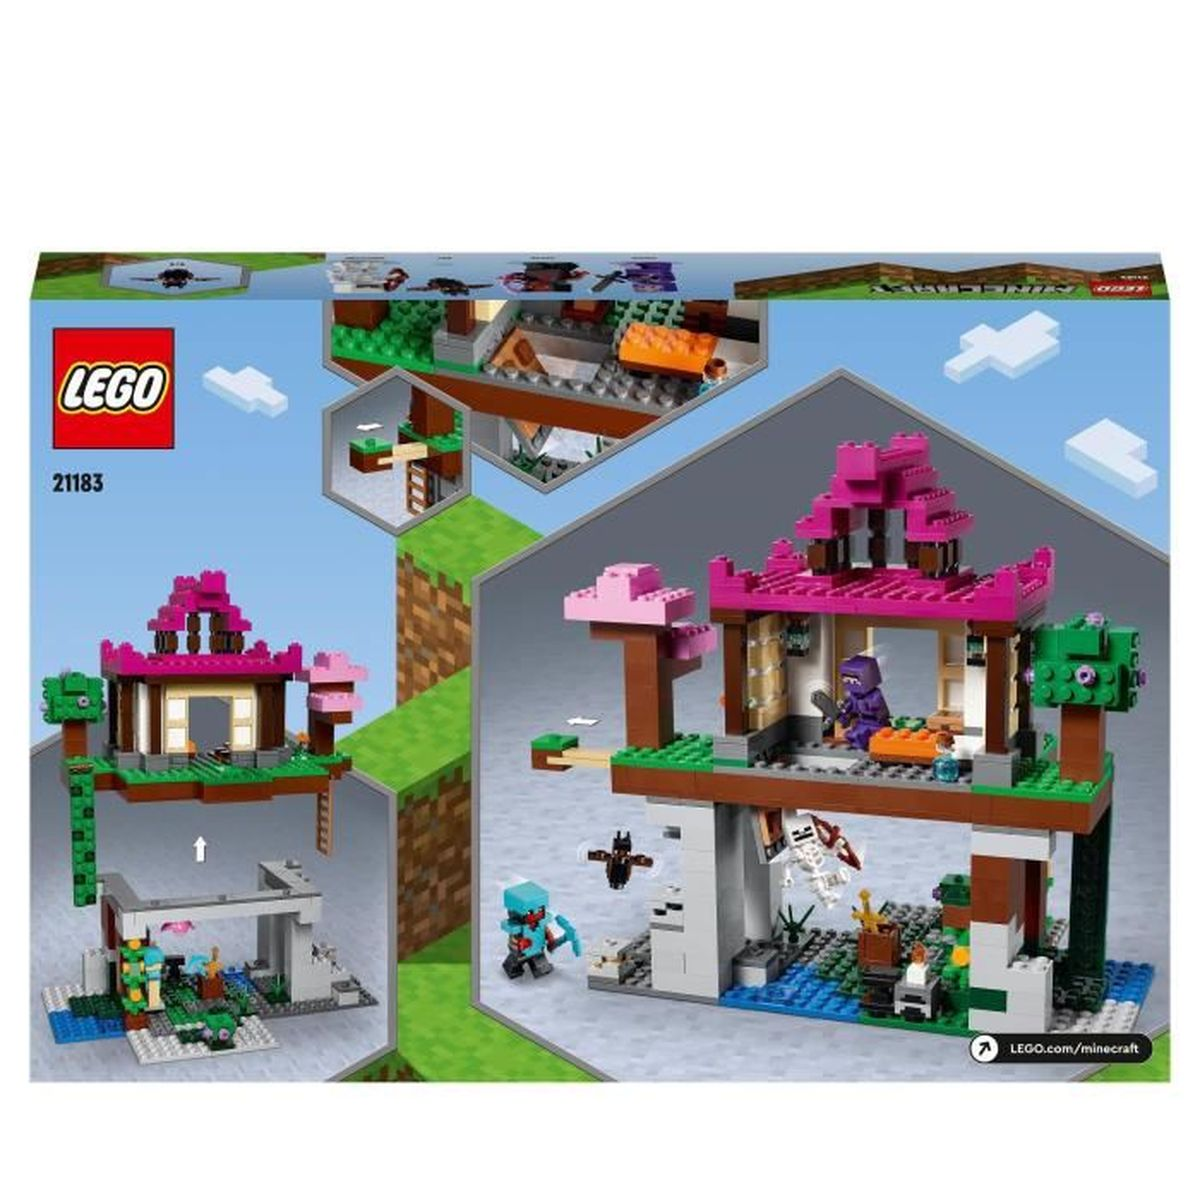 LEGO 21183 Minecraft Das Bausatz Trainingsgelande